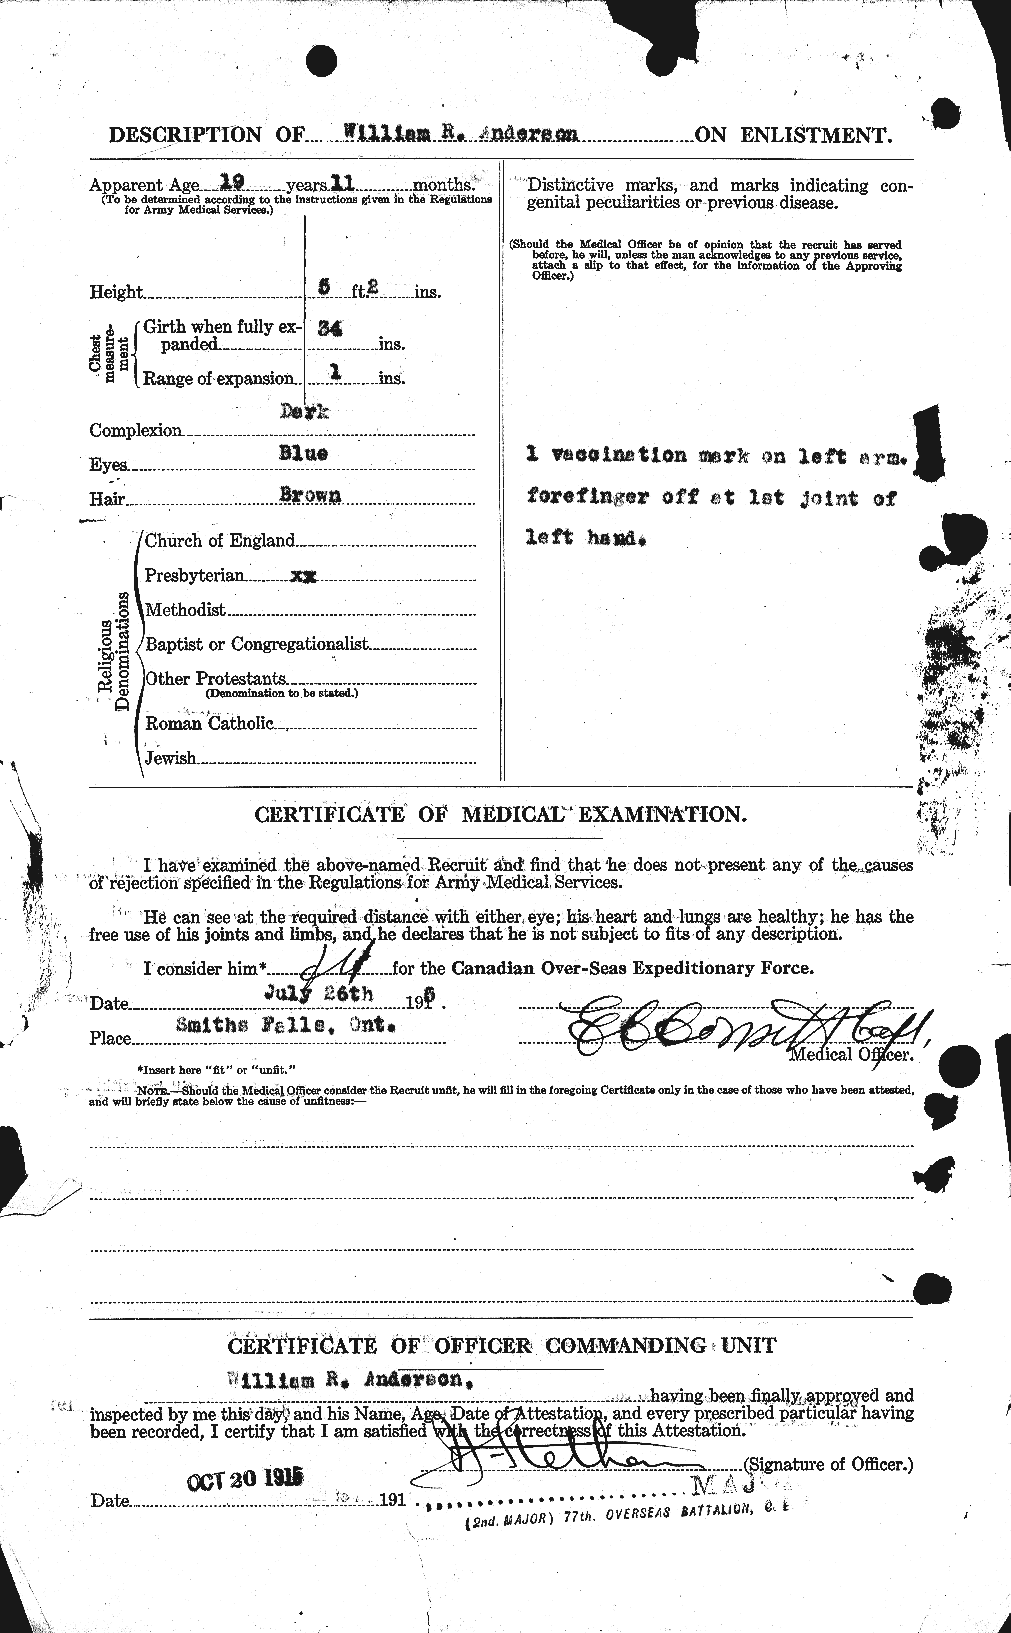 Dossiers du Personnel de la Première Guerre mondiale - CEC 210677b